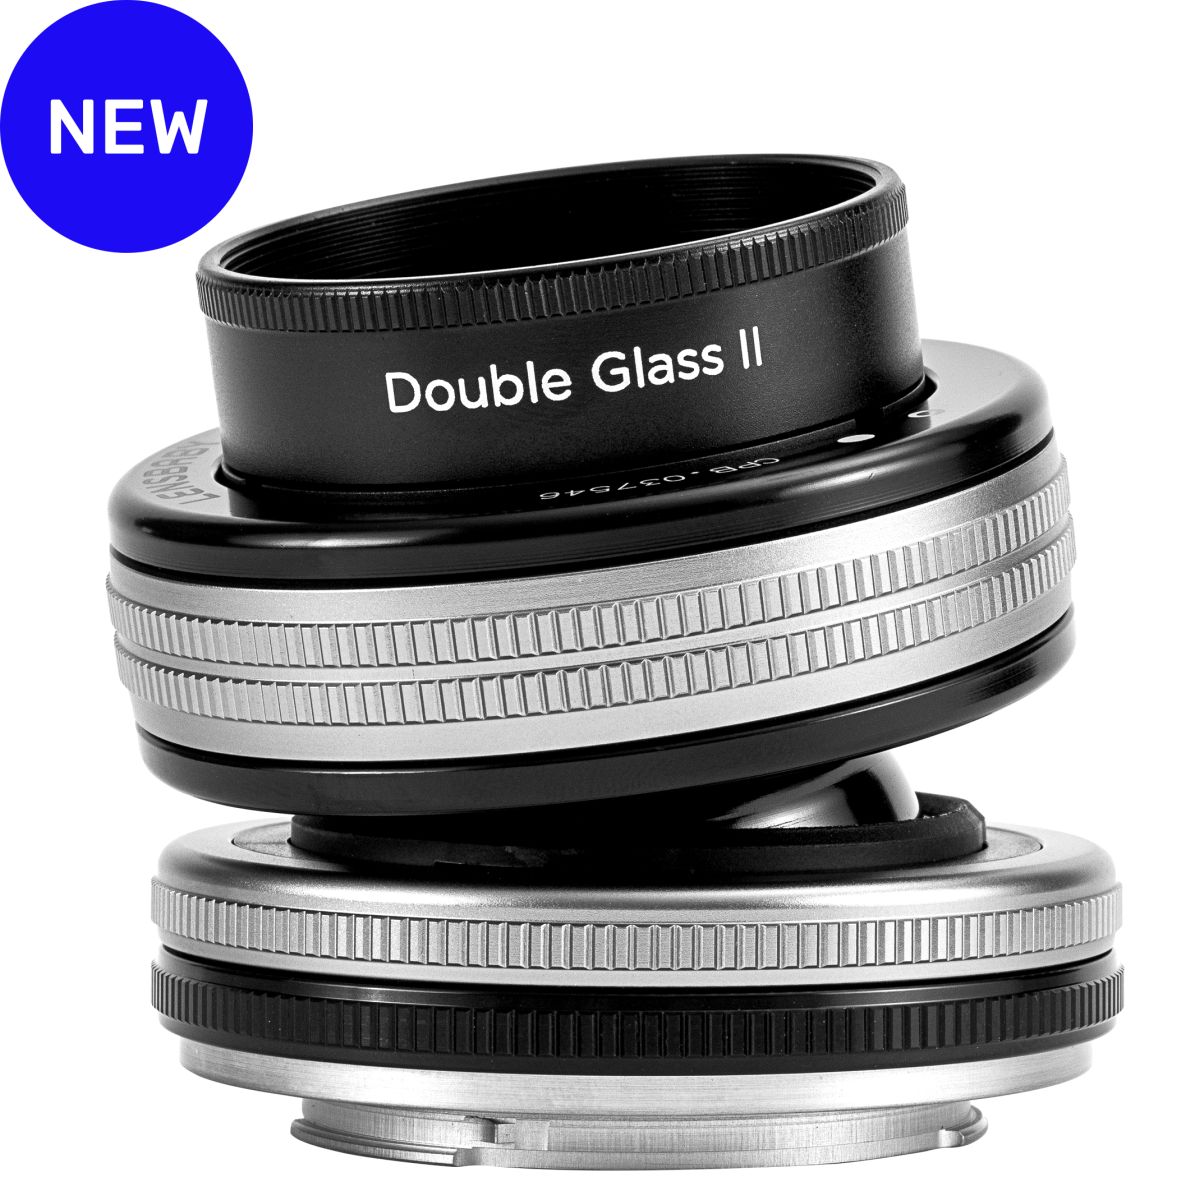 Lensbaby Composer Pro II + Double Glass II Sony E